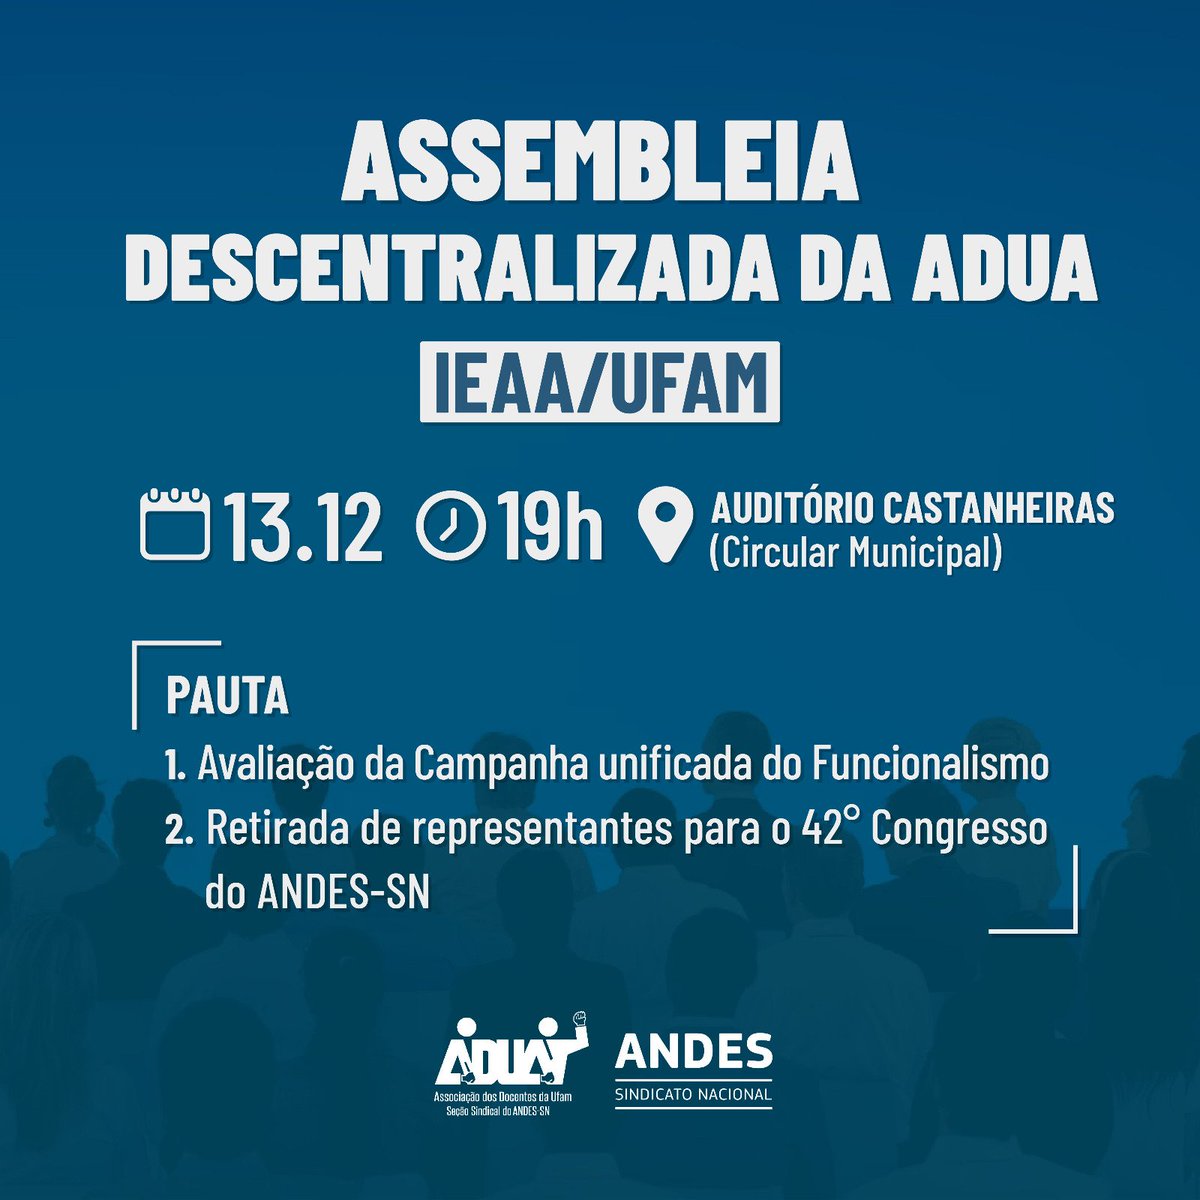 🗓️ Atenção docentes do IEAA sindicalizados(as) à ADUA, a Assembleia descentralizada da Seção Sindical ocorrerá no campus da Ufam em Humaitá no dia 13 de dezembro, às 19h, no Auditório Castanheiras (Circular Municipal).